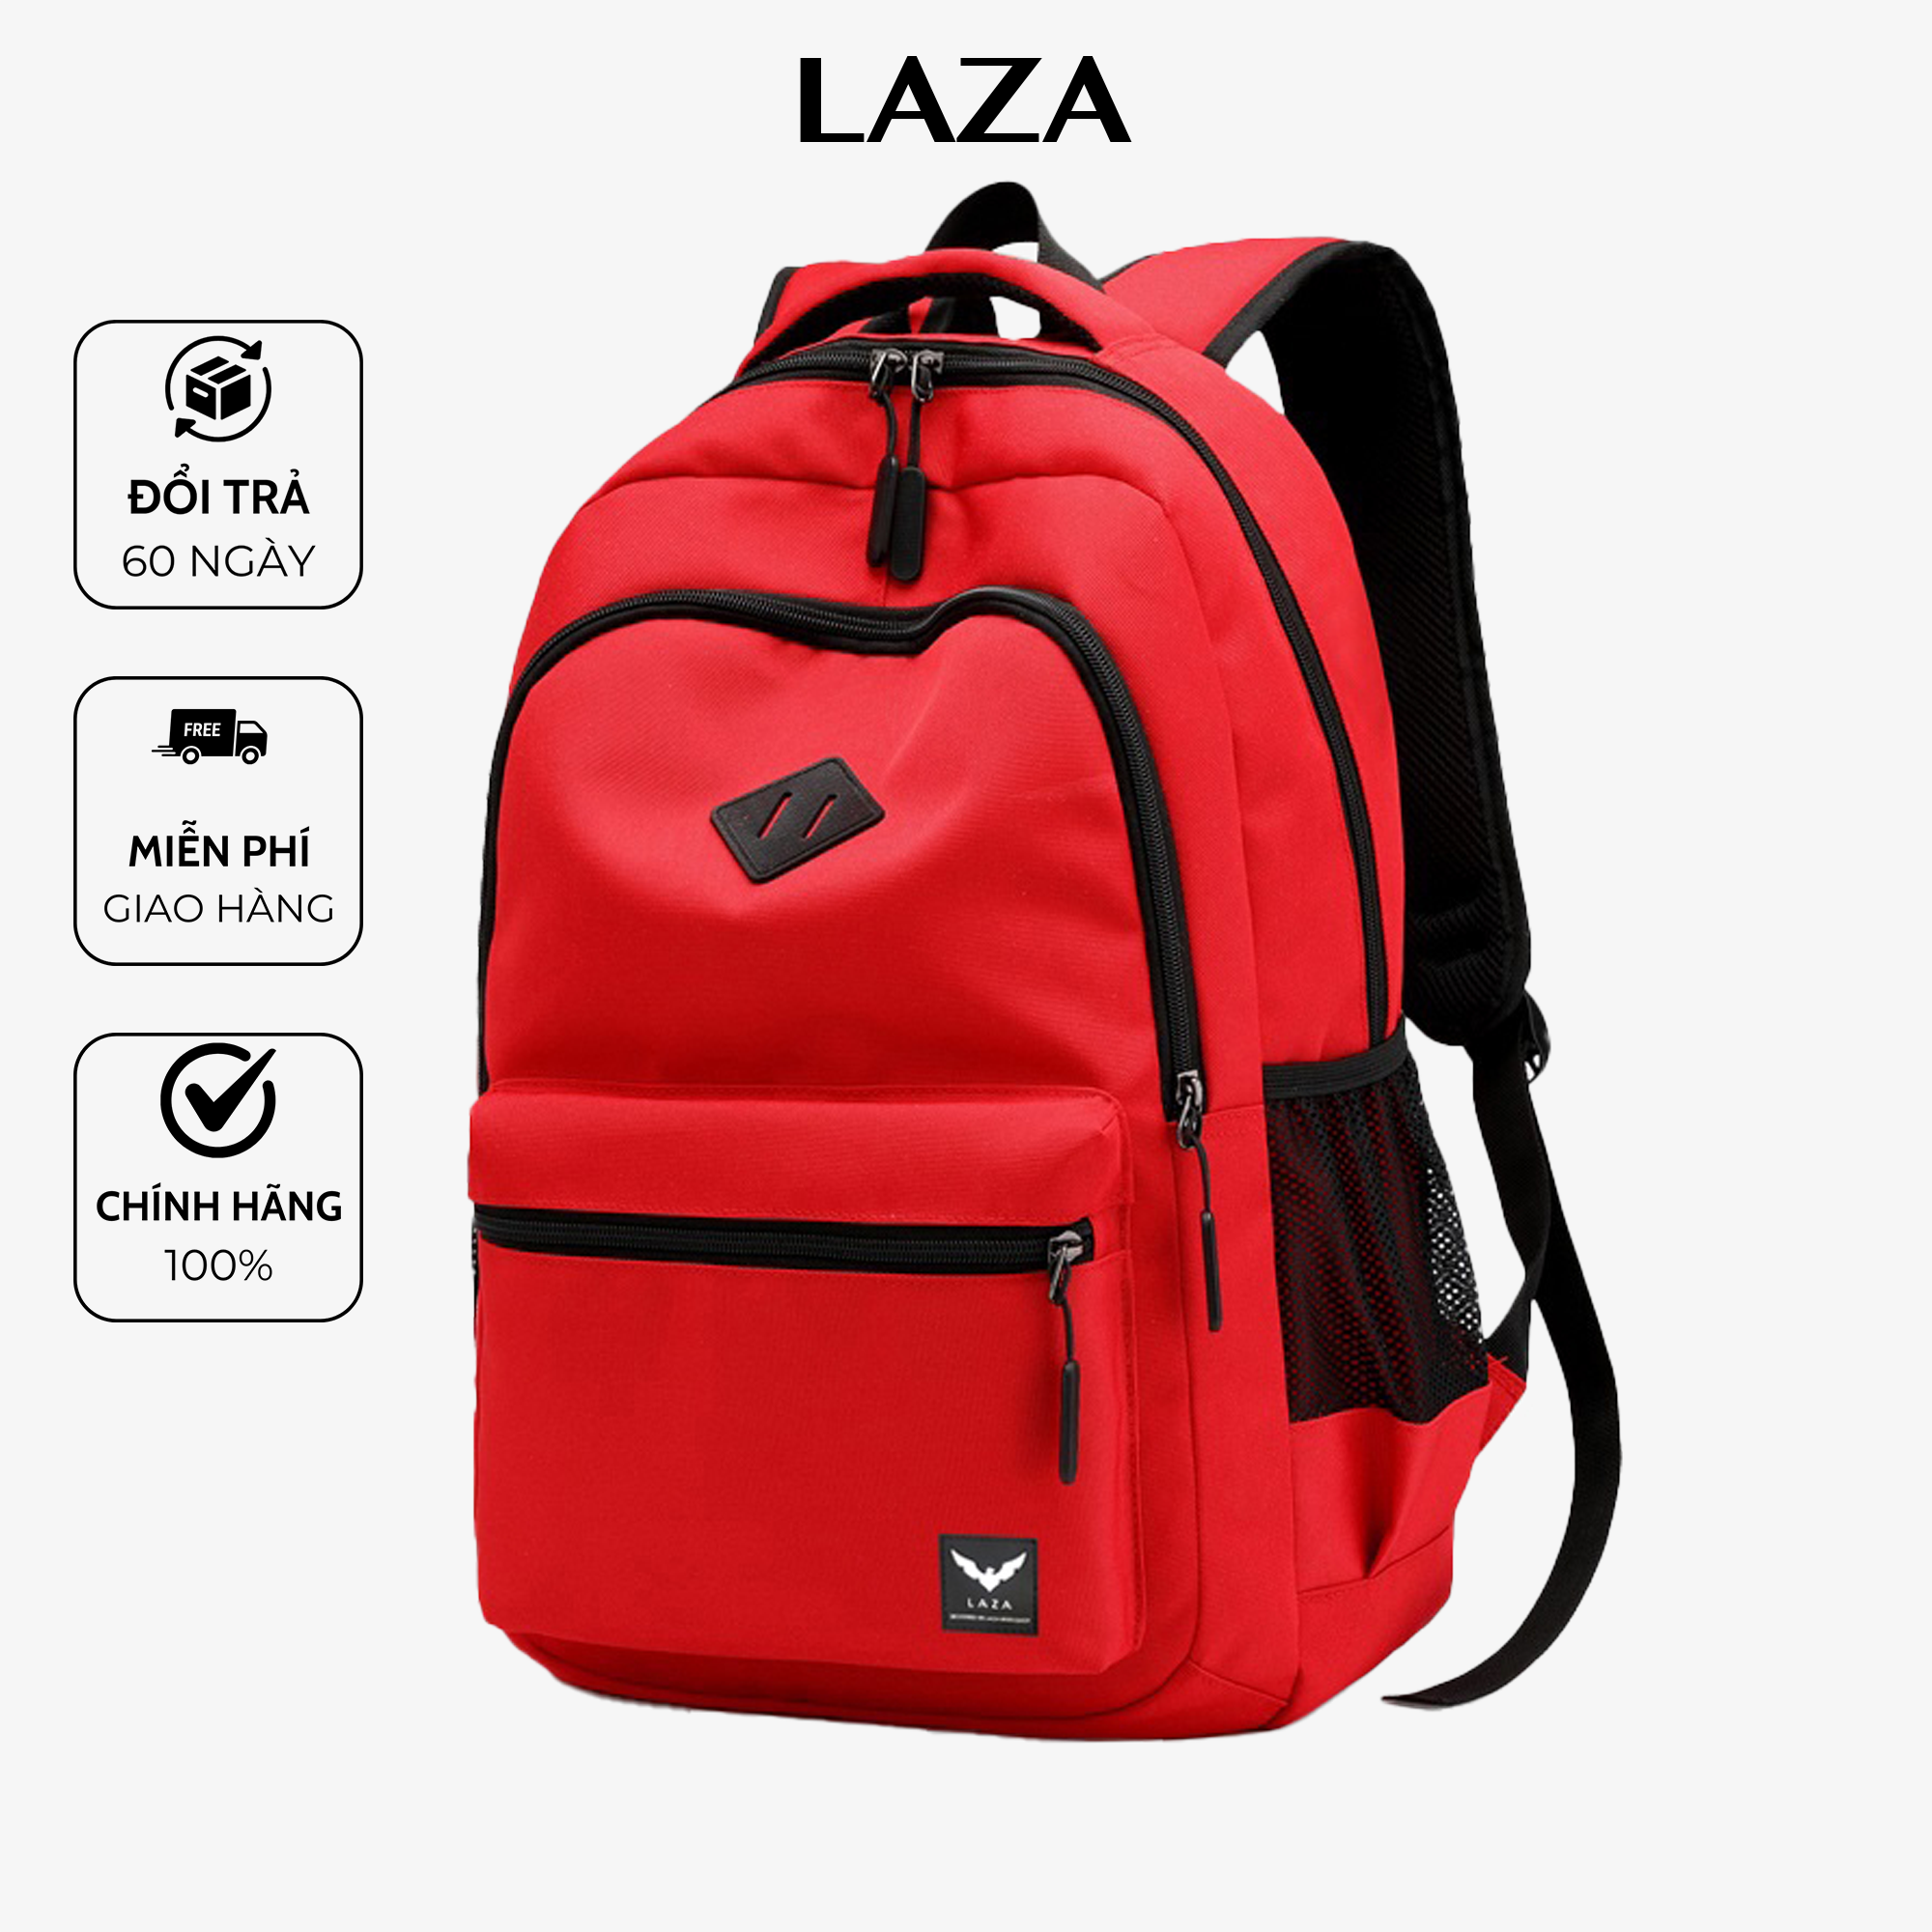 Balo nam nữ thời trang unisex LAZA 432 chất liệu polyeste chống thấm, thiết kế tinh tế, chứa được tối đa laptop 15.6in